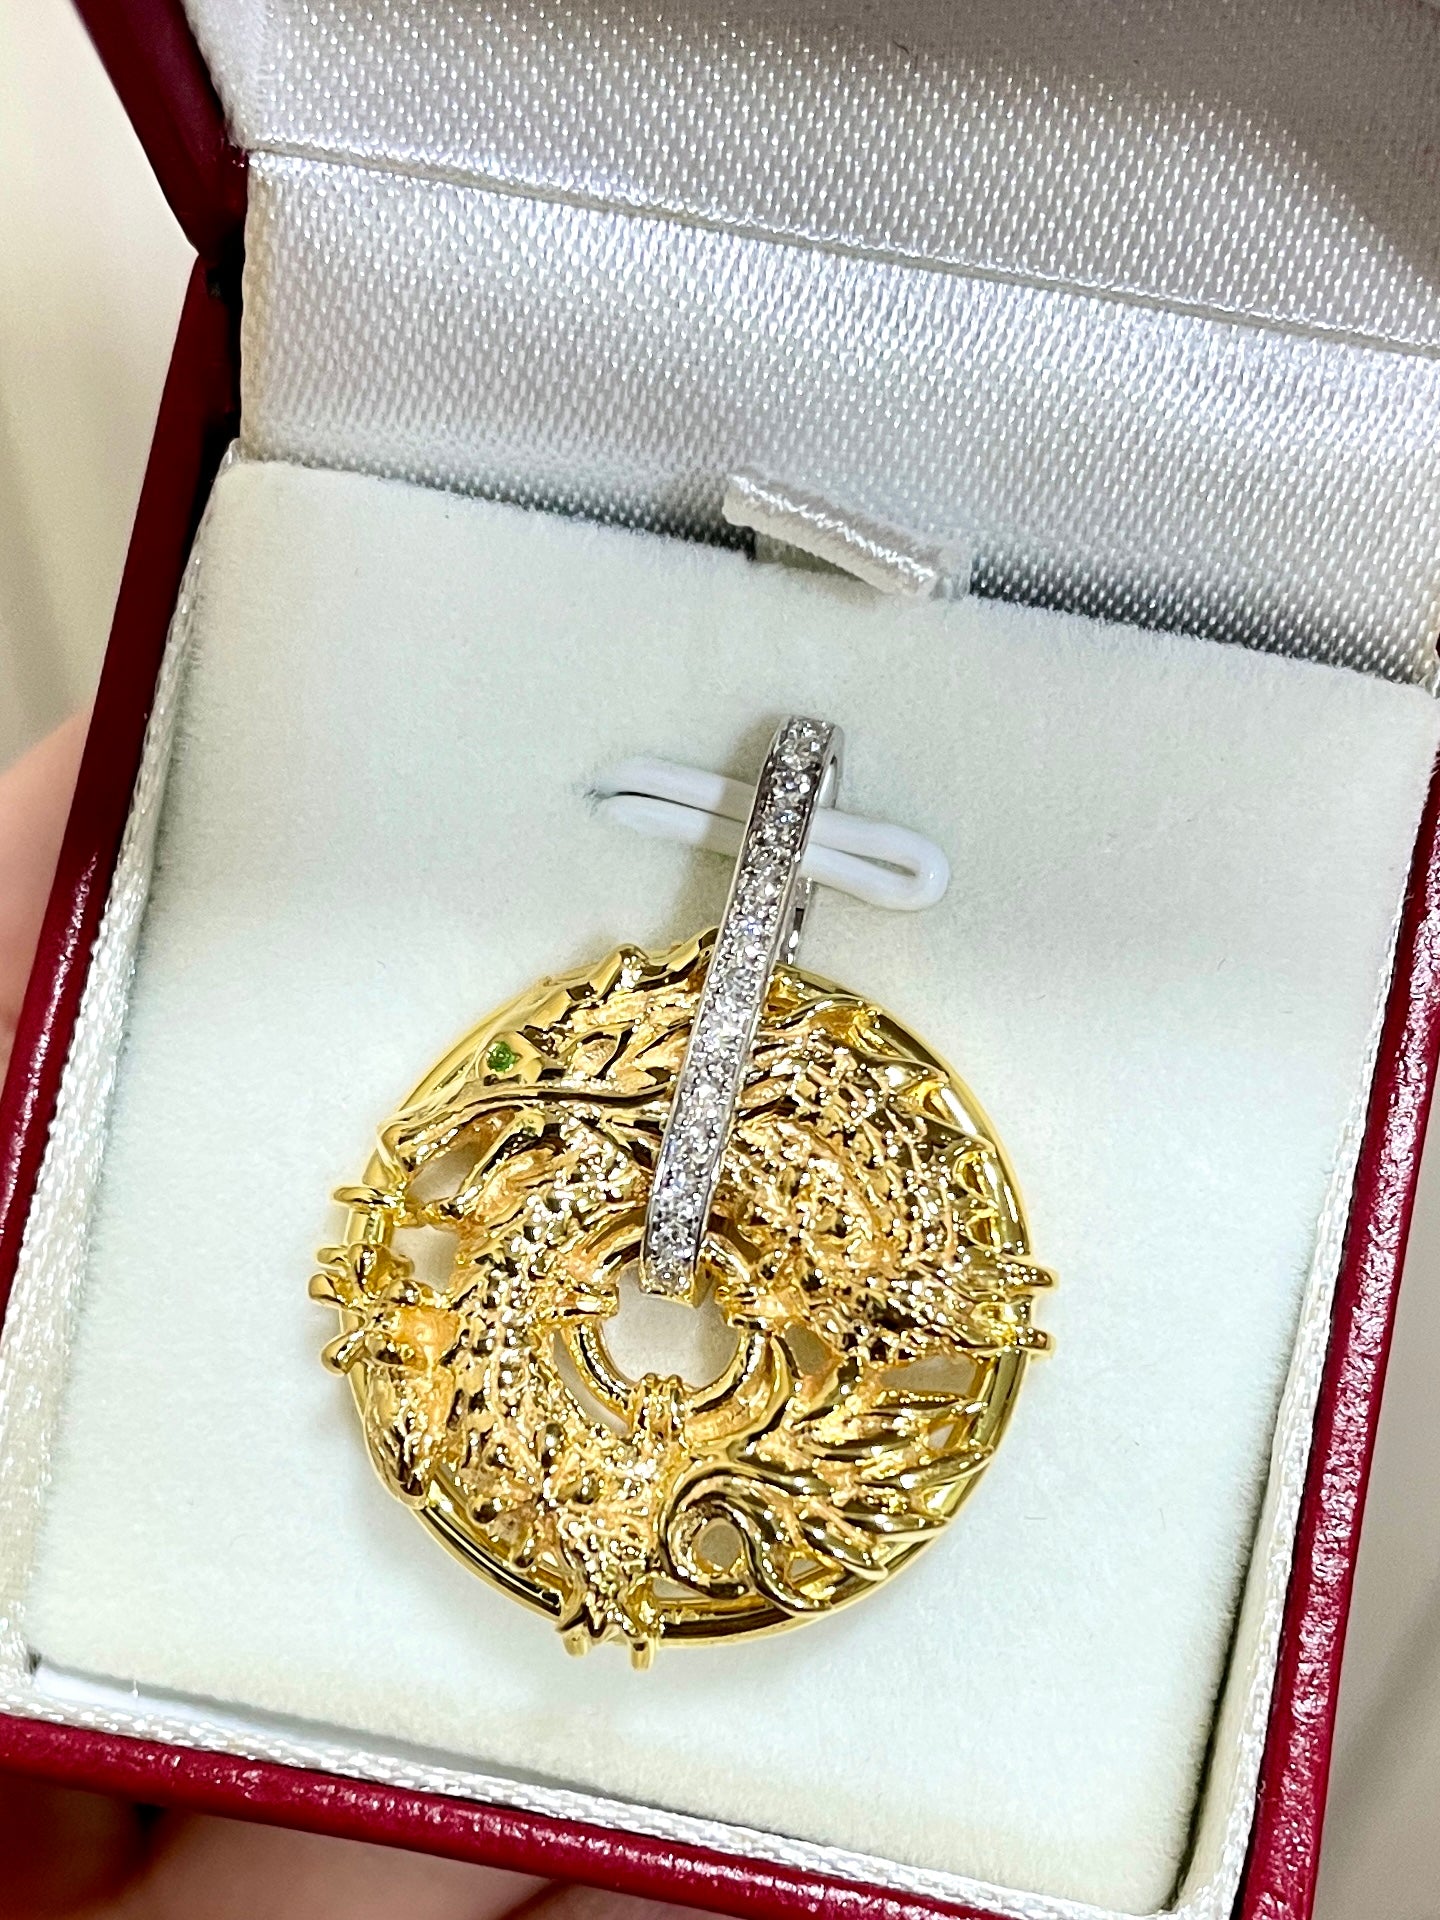 White Gold Diamond Cut Dragon Charm Pendant